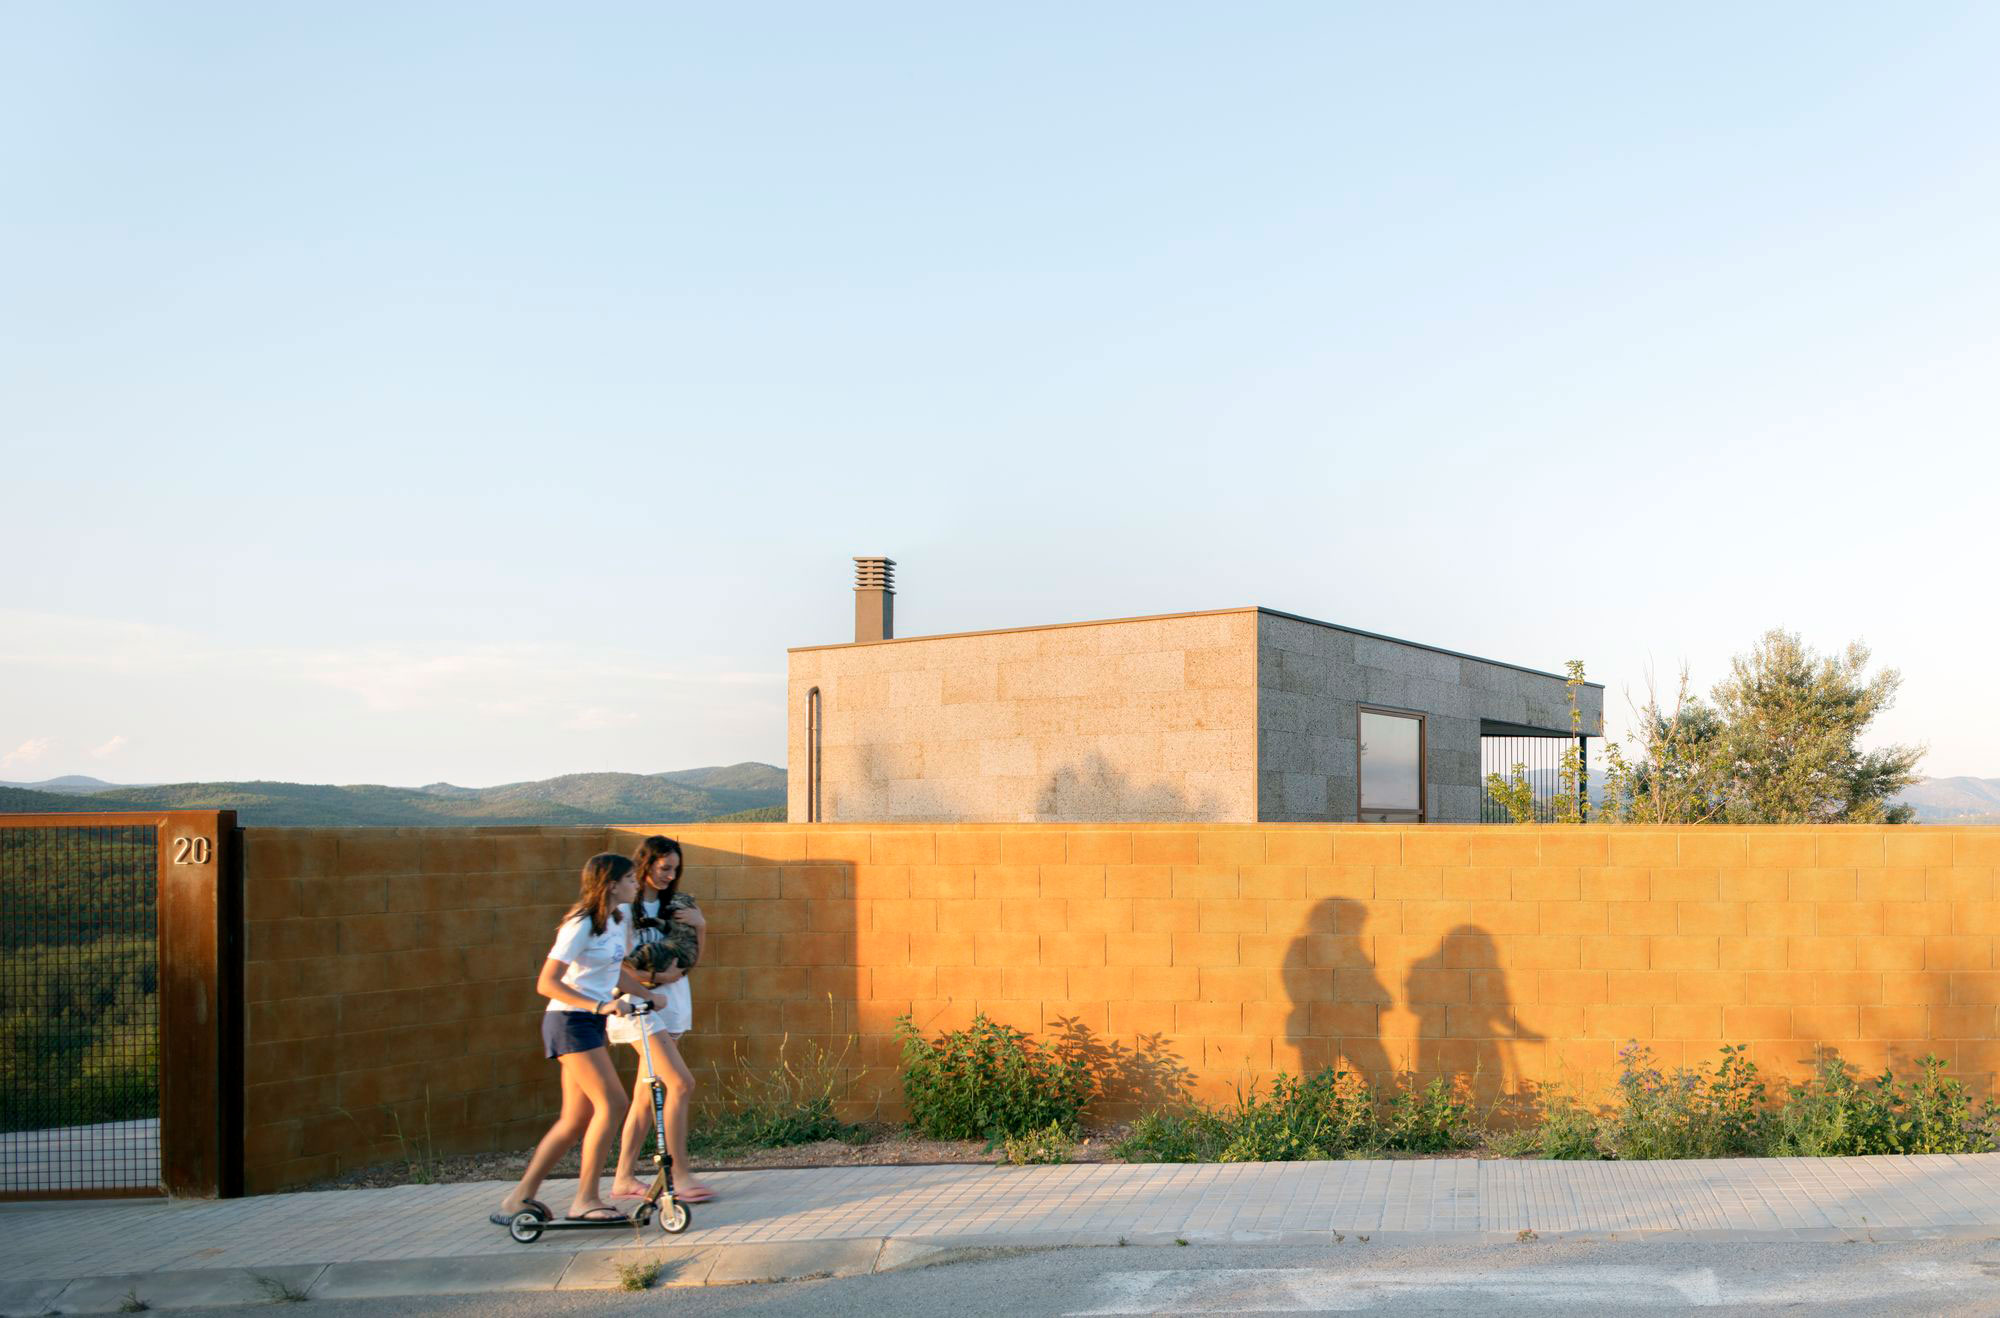 面對環境的挑戰與限制，這座住宅的設計彰顯了與自然和諧共存的願景，並提出了一種可行的解決方案，展現了即使在預算有限的情況下，仍能夠建造出既健康又環保的被動式綠建築（攝影： El Fil Verd, Estudi d'Arquitectura）